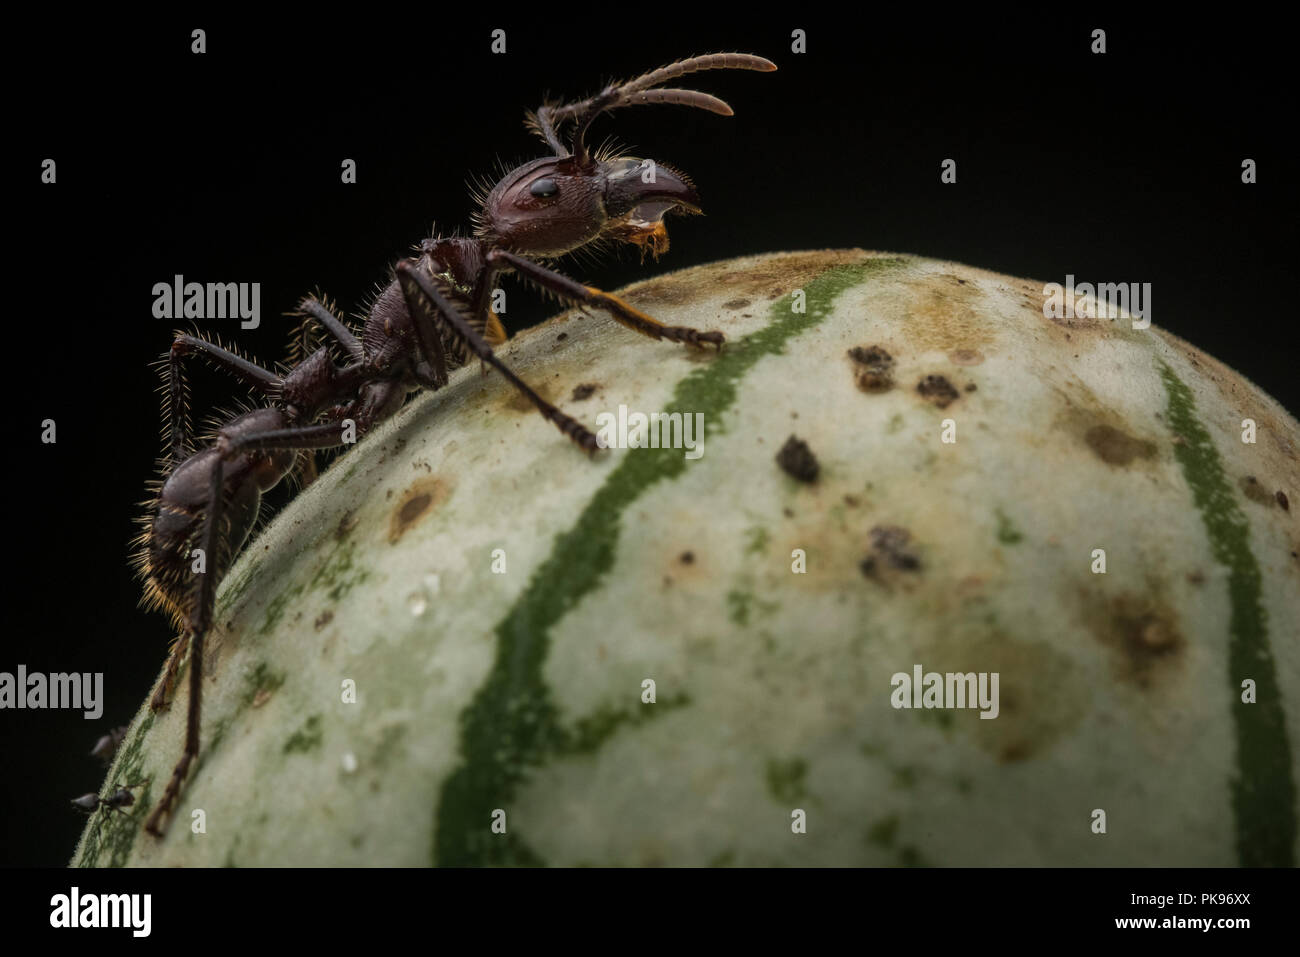 Ein bullet Ant (Paraponera clavata) die berüchtigten von Insekten. Es erhält seine Bekanntheit aus in eines der am meisten schmerzhafte Stiche in der Welt. Stockfoto